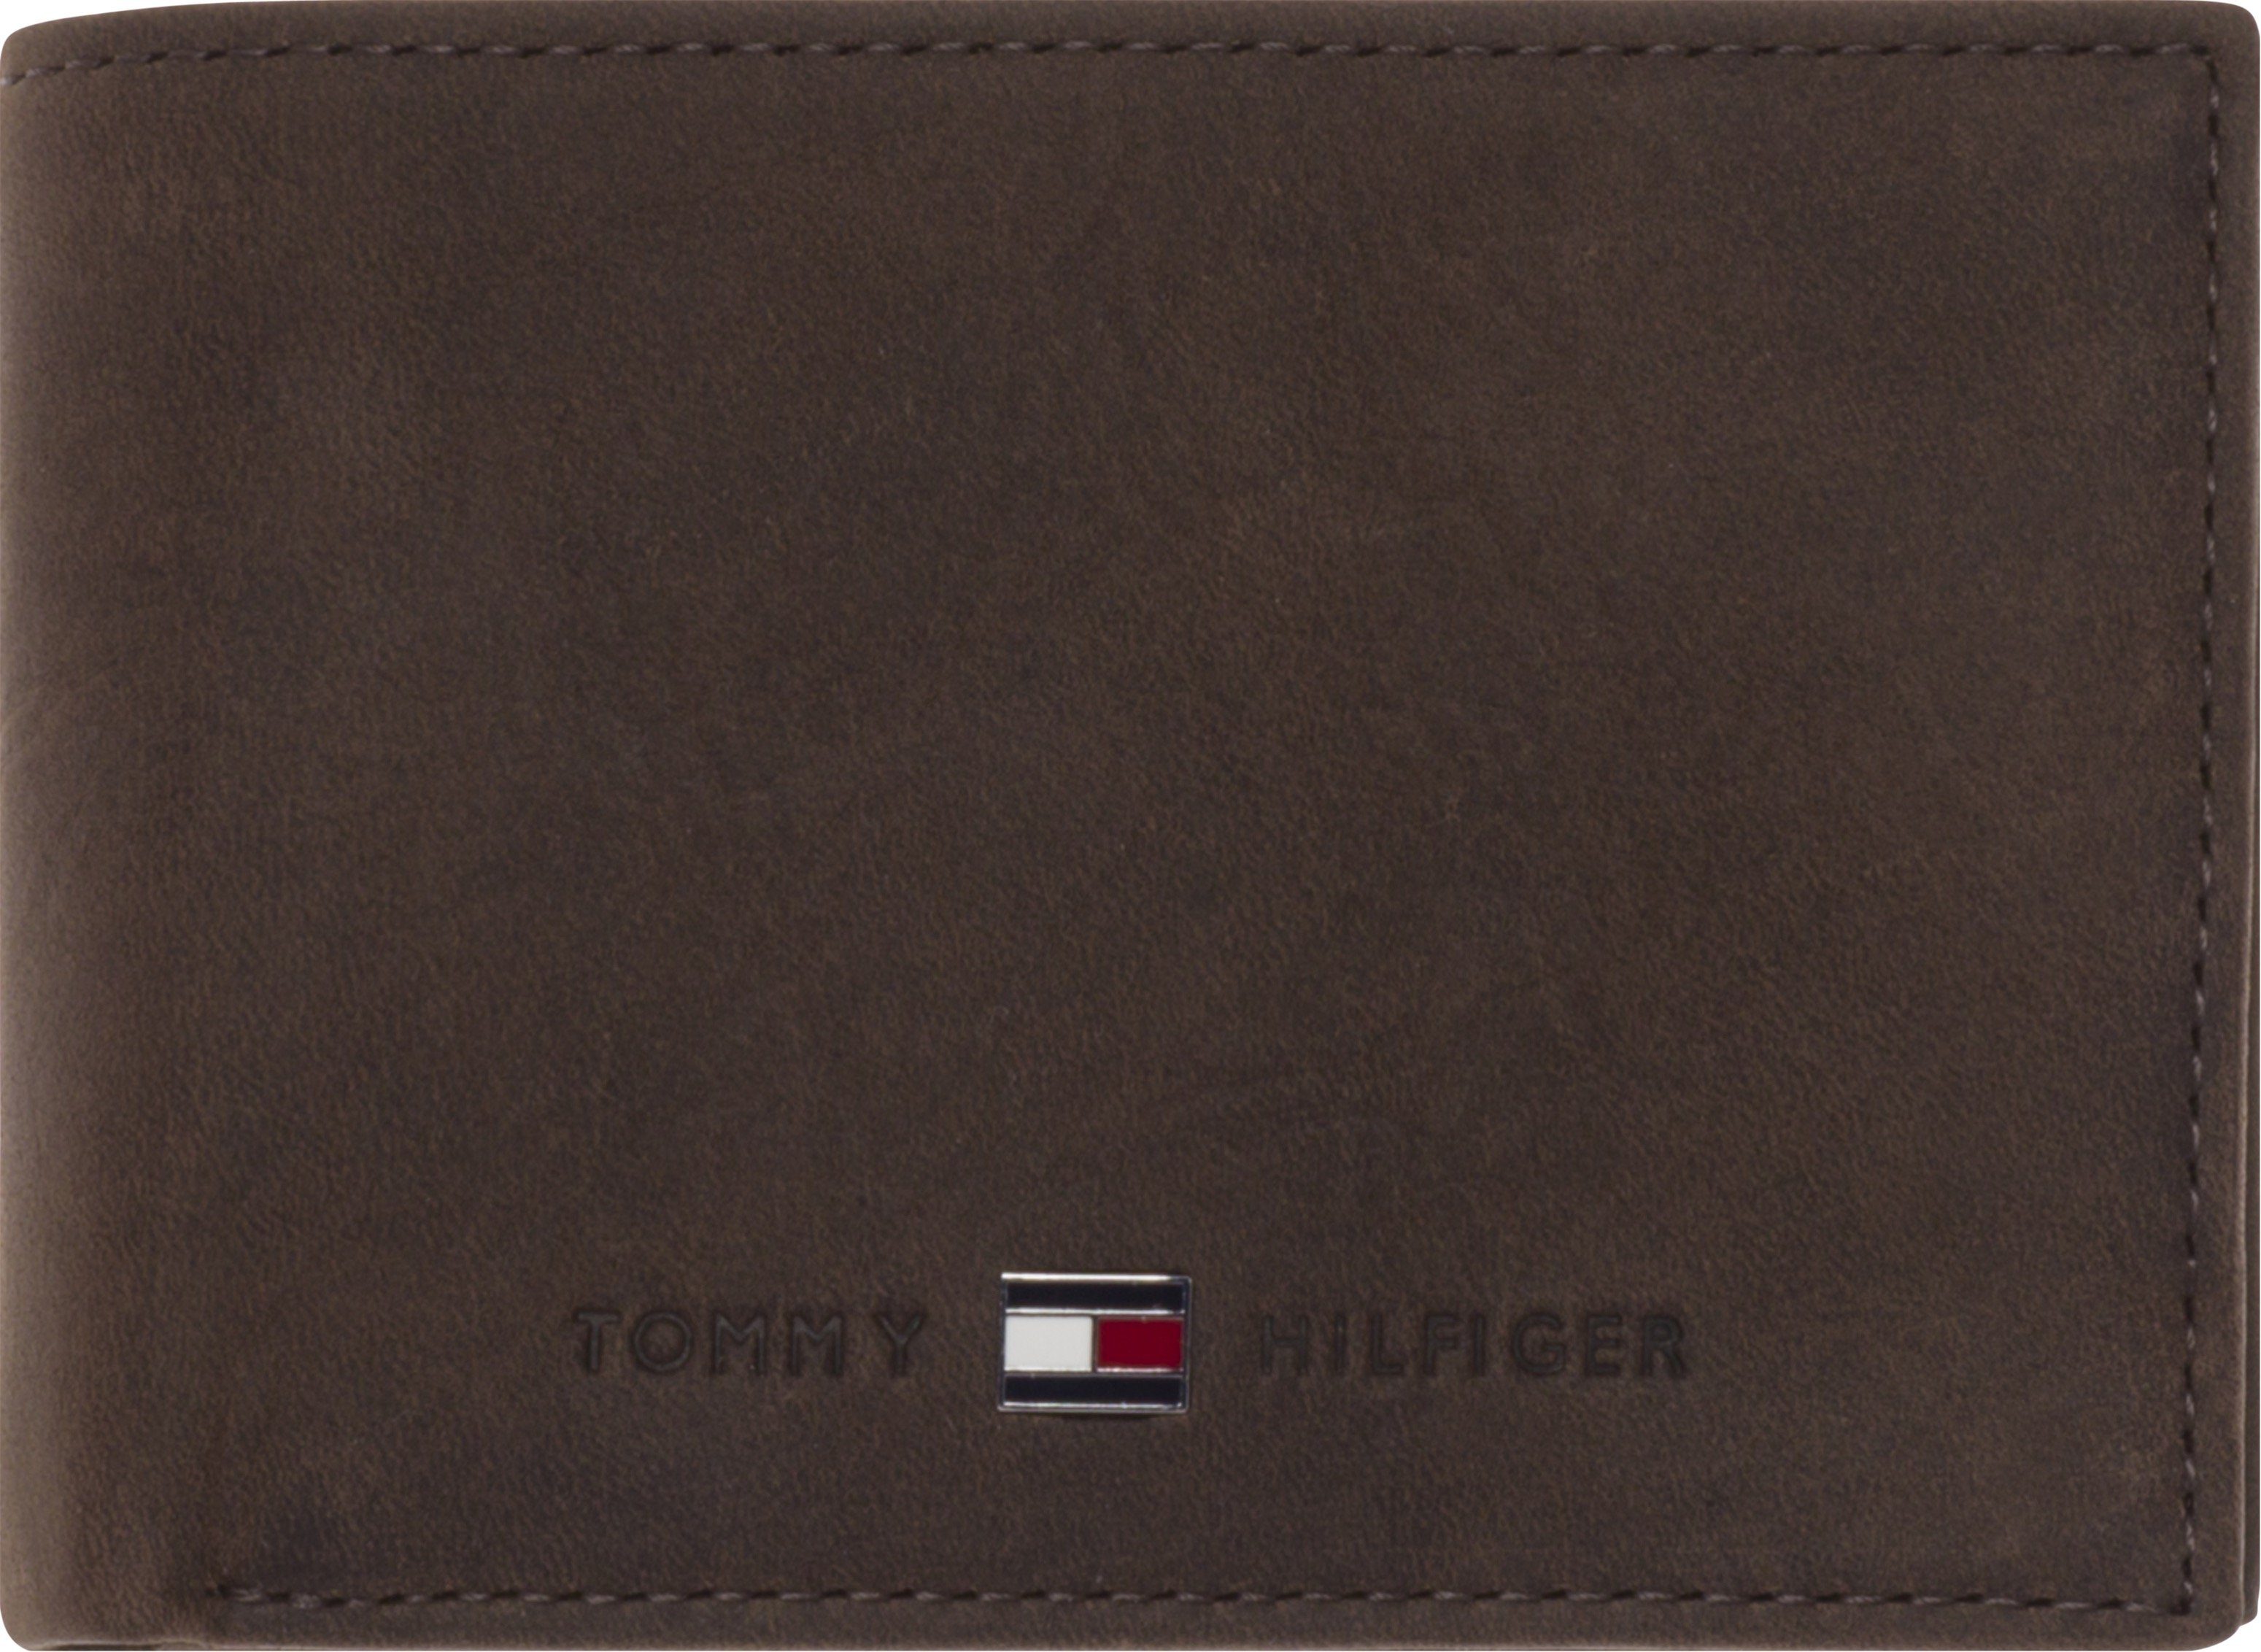 Tommy Hilfiger Geldbörse »JOHNSON MINI CC FLAP COIN POCKET«, aus  hochwertigem Leder online kaufen | OTTO